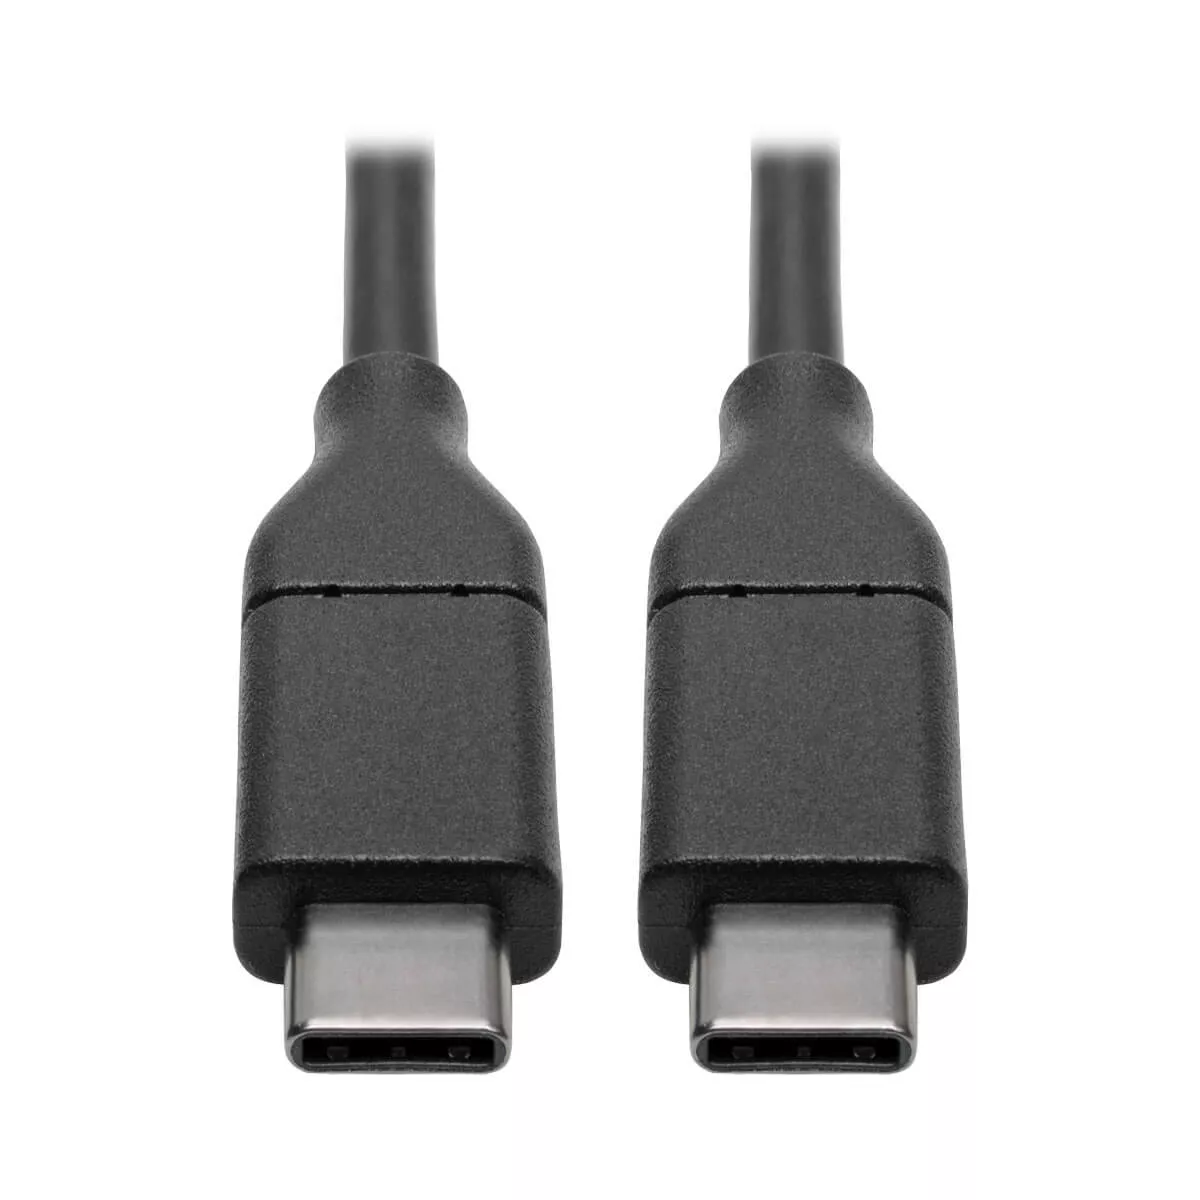 Achat EATON TRIPPLITE USB-C Cable M/M - USB 2.0 5A Rated 6ft au meilleur prix